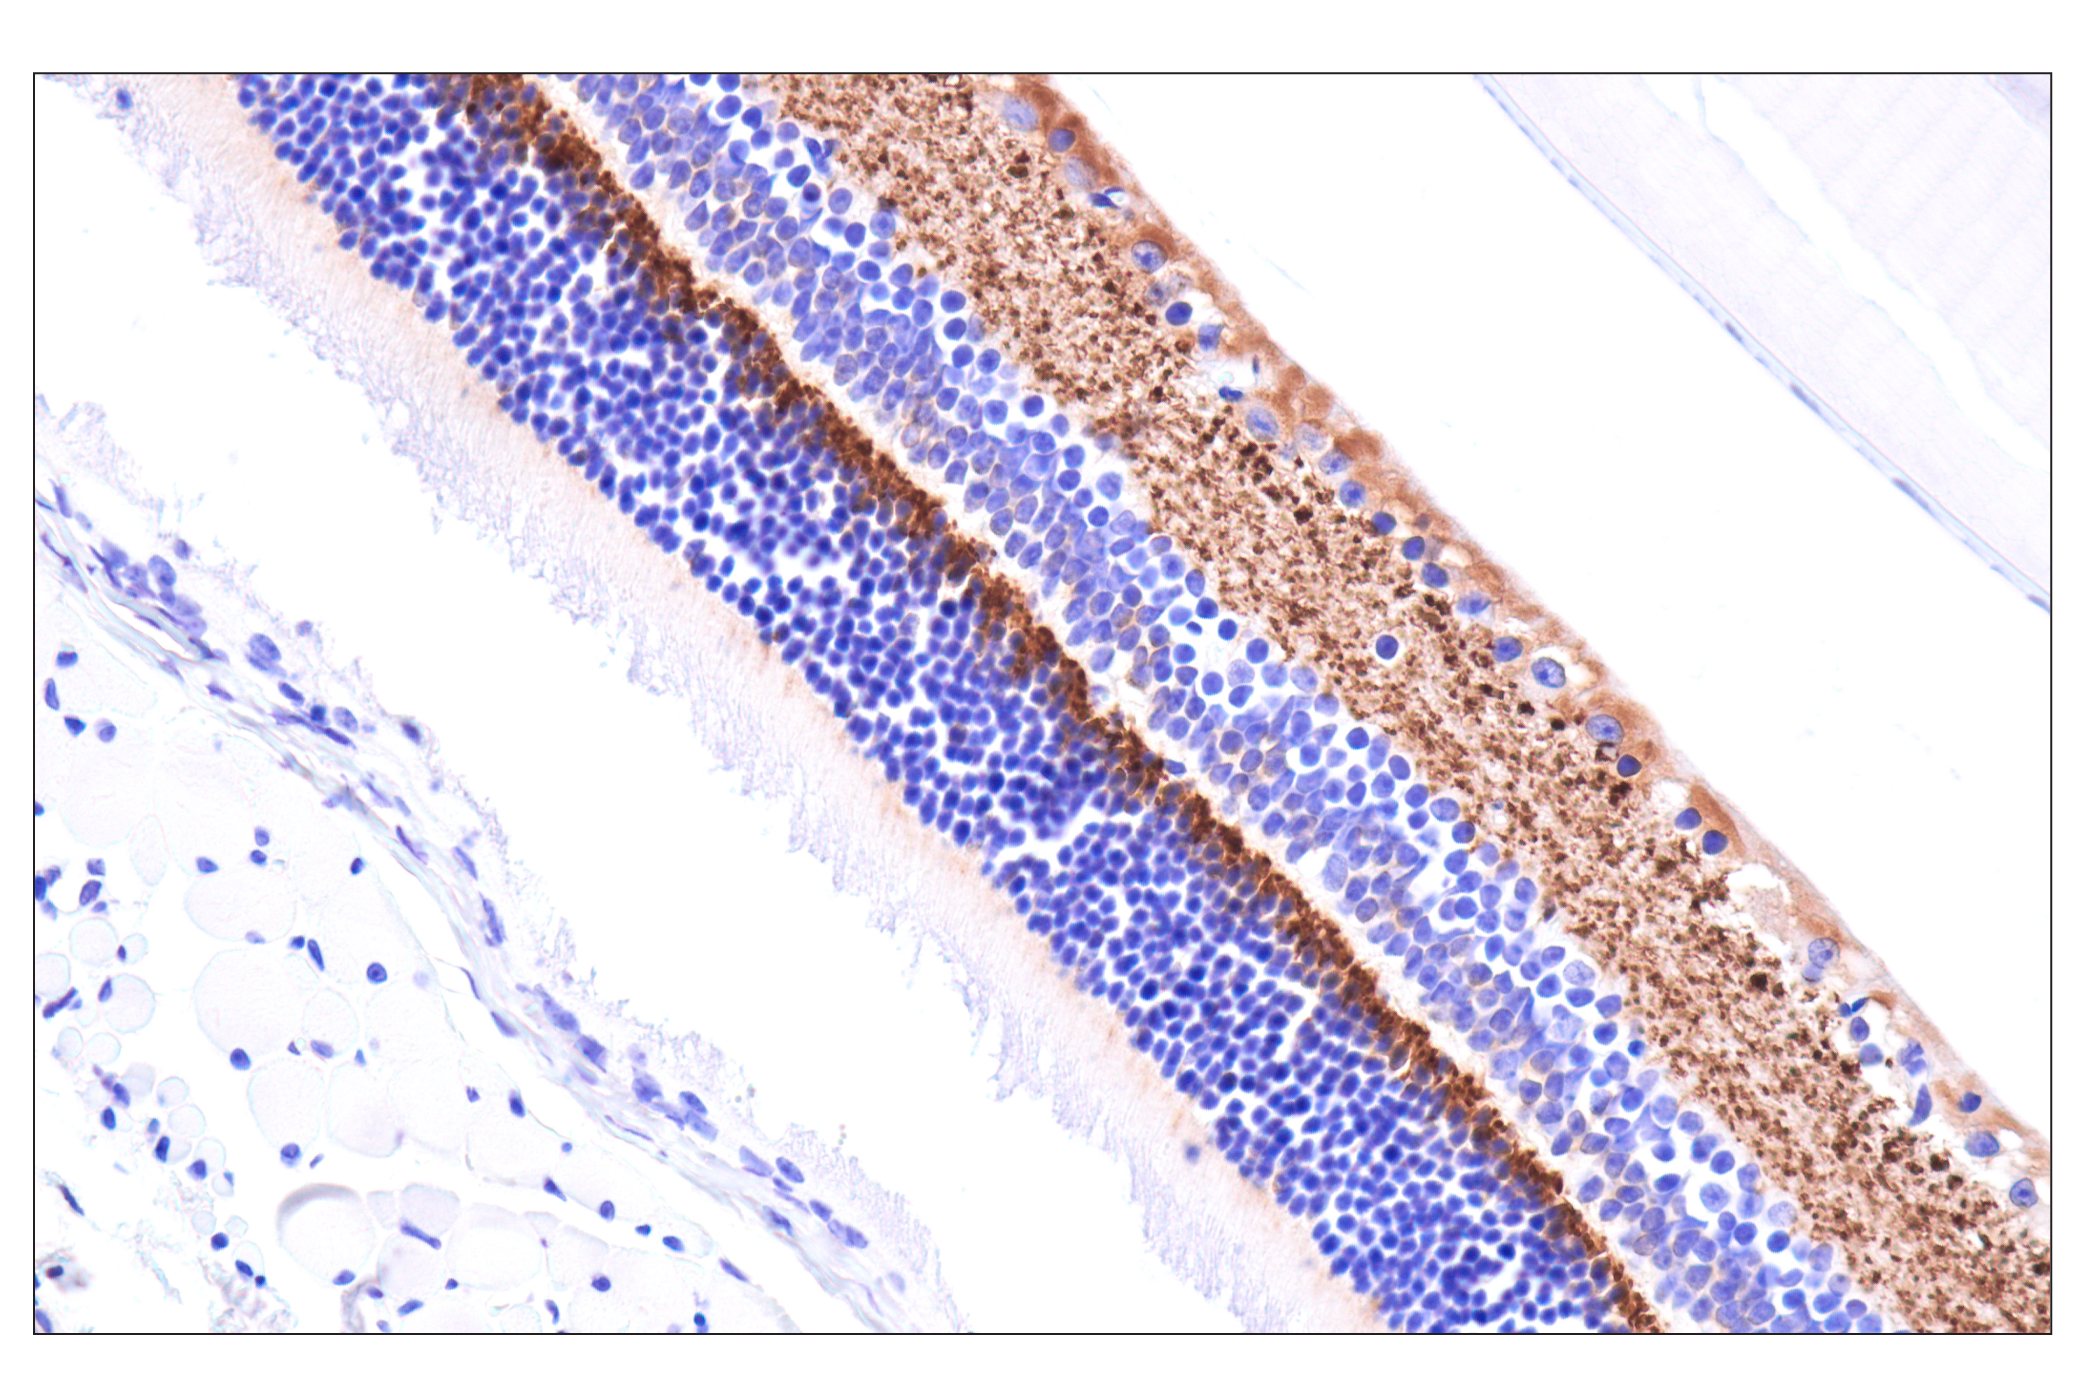  Image 20: Functional Neuron Marker Antibody Sampler Kit